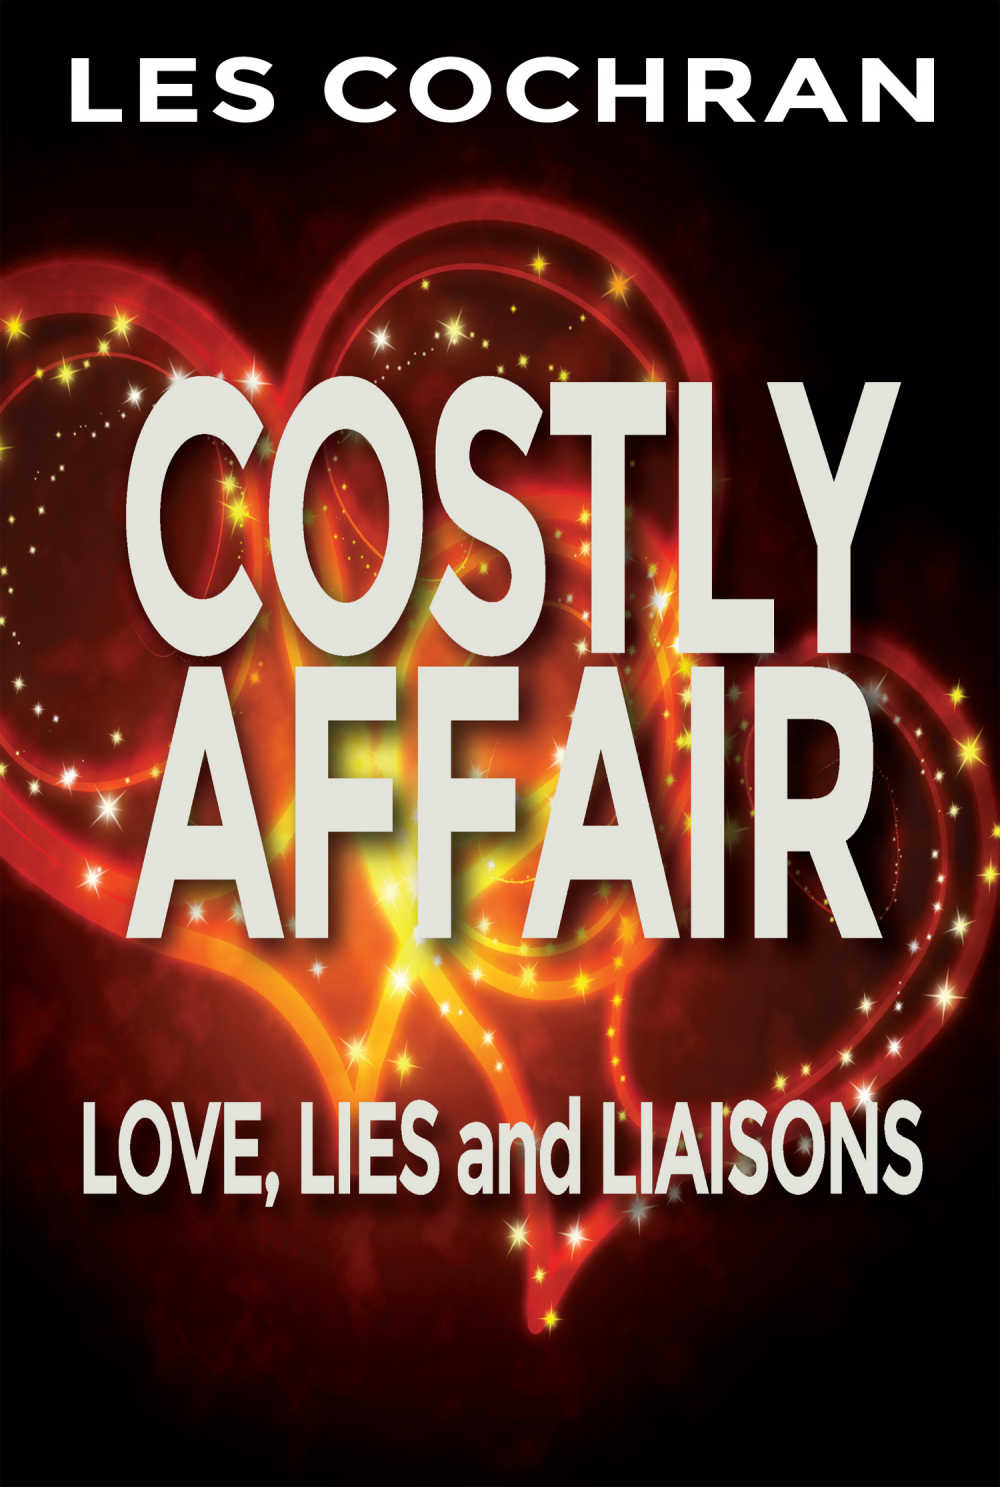 Costly Affair